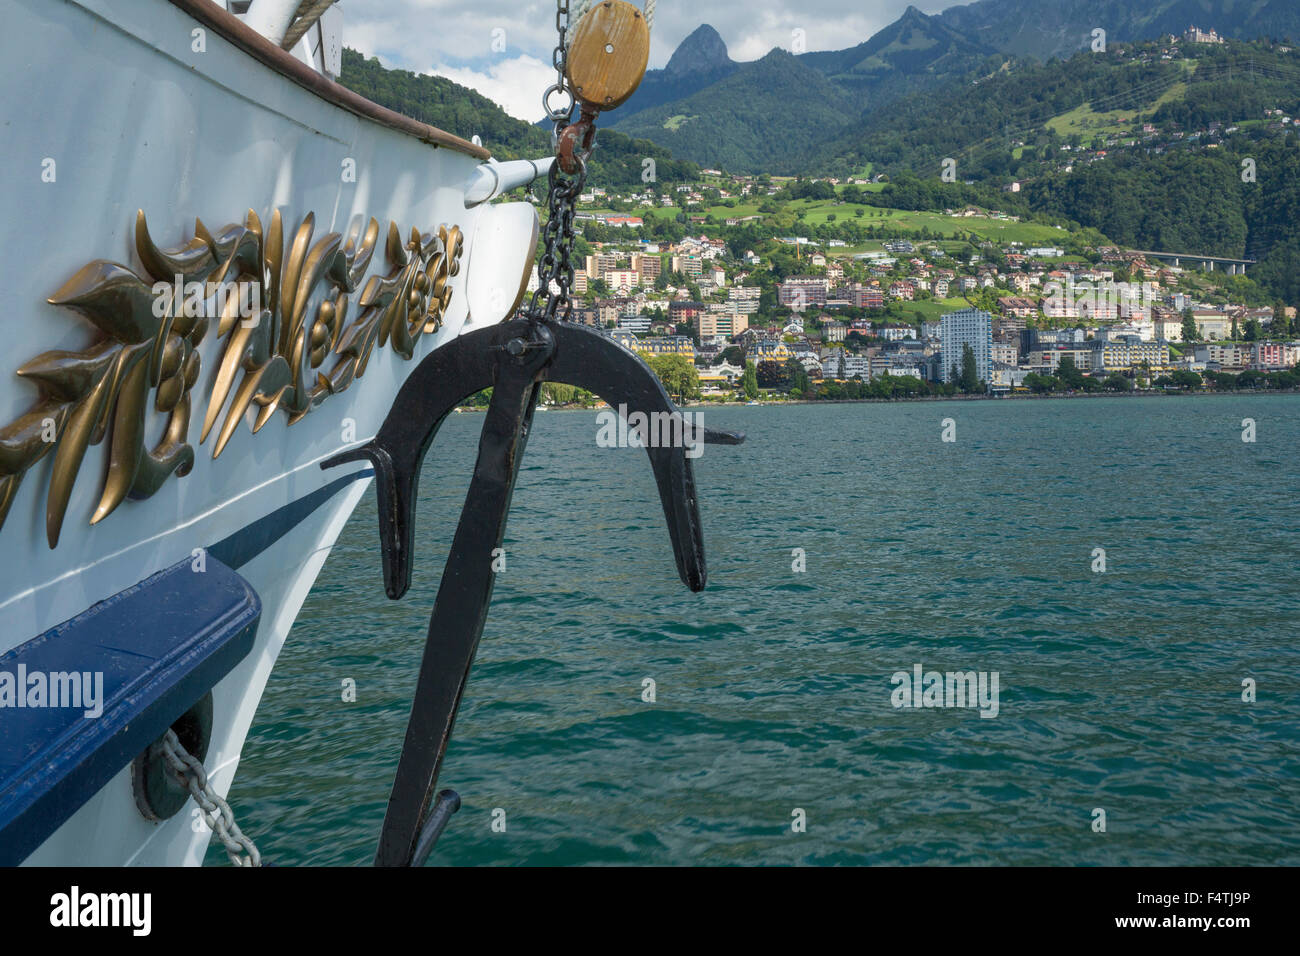 La lancha en el lago de Ginebra, cerca de Montreux VD Foto de stock